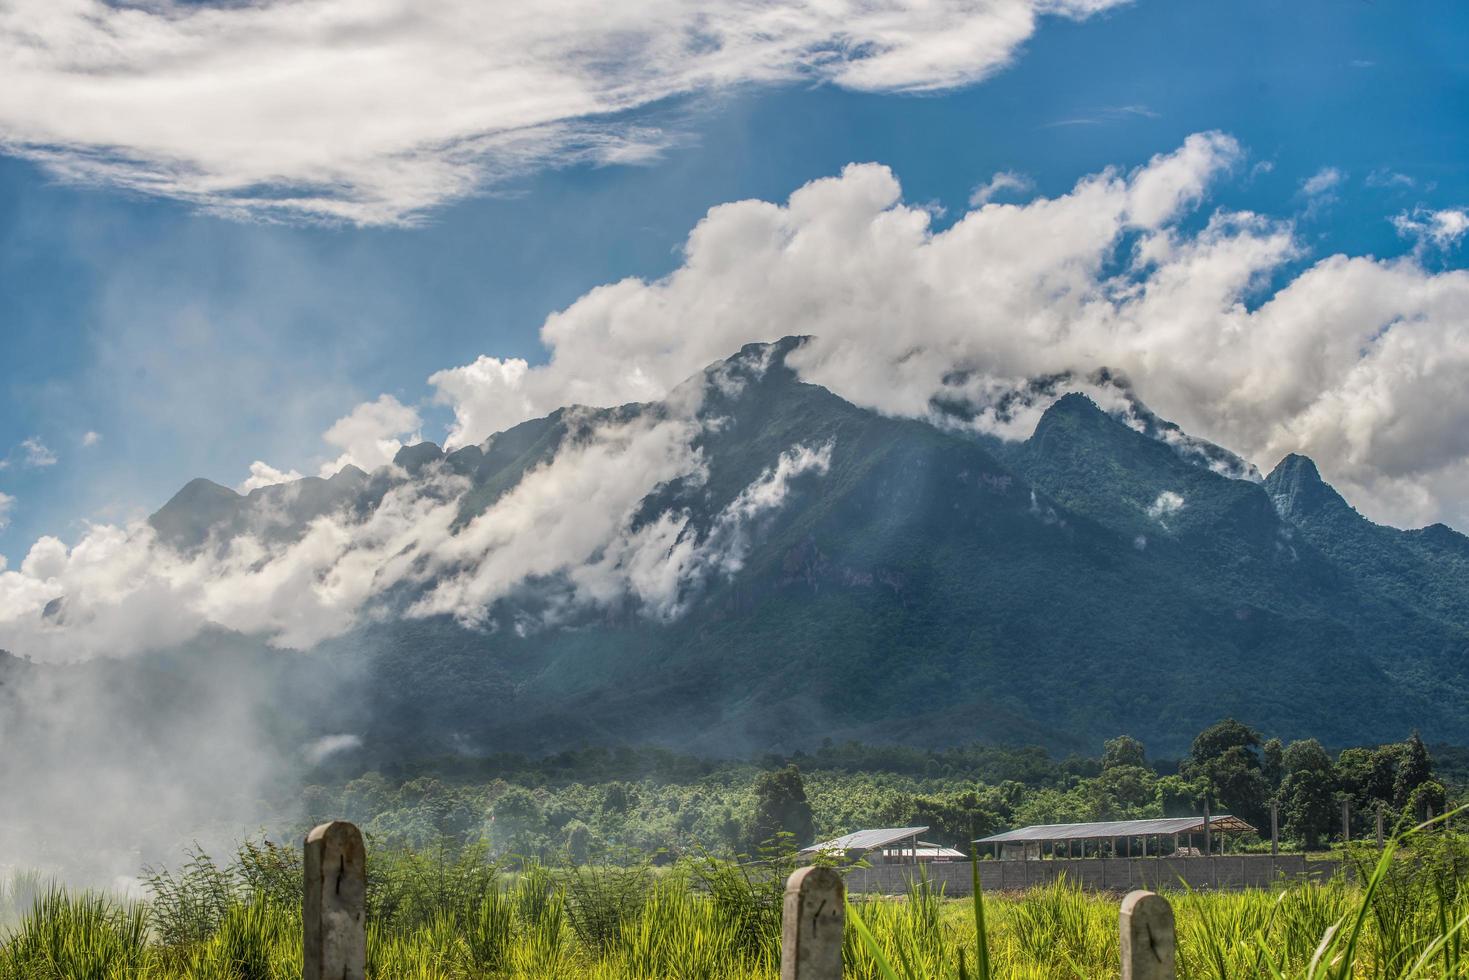 las nubes cubrieron la montaña del parque nacional de chiang dao en la provincia de chiang mai de tailandia. chiang dao es la tercera montaña más alta de todas las montañas de tailandia. foto